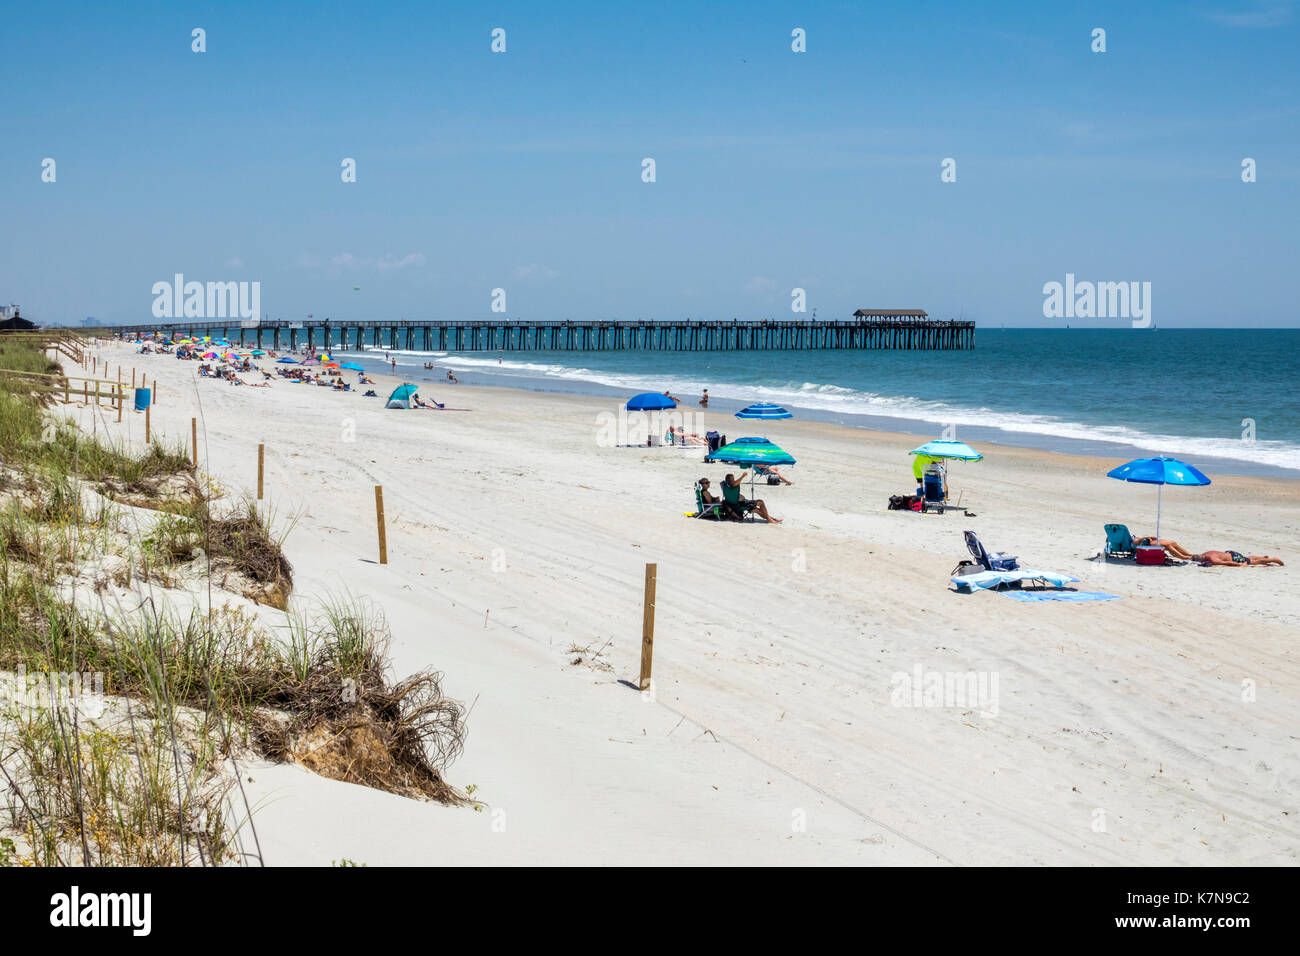 Myrtle Beach Caroline du Sud, océan Atlantique, Myrtle Beach State Park, sable, jetée de pêche, dune, bains de soleil, SC170516111 Banque D'Images